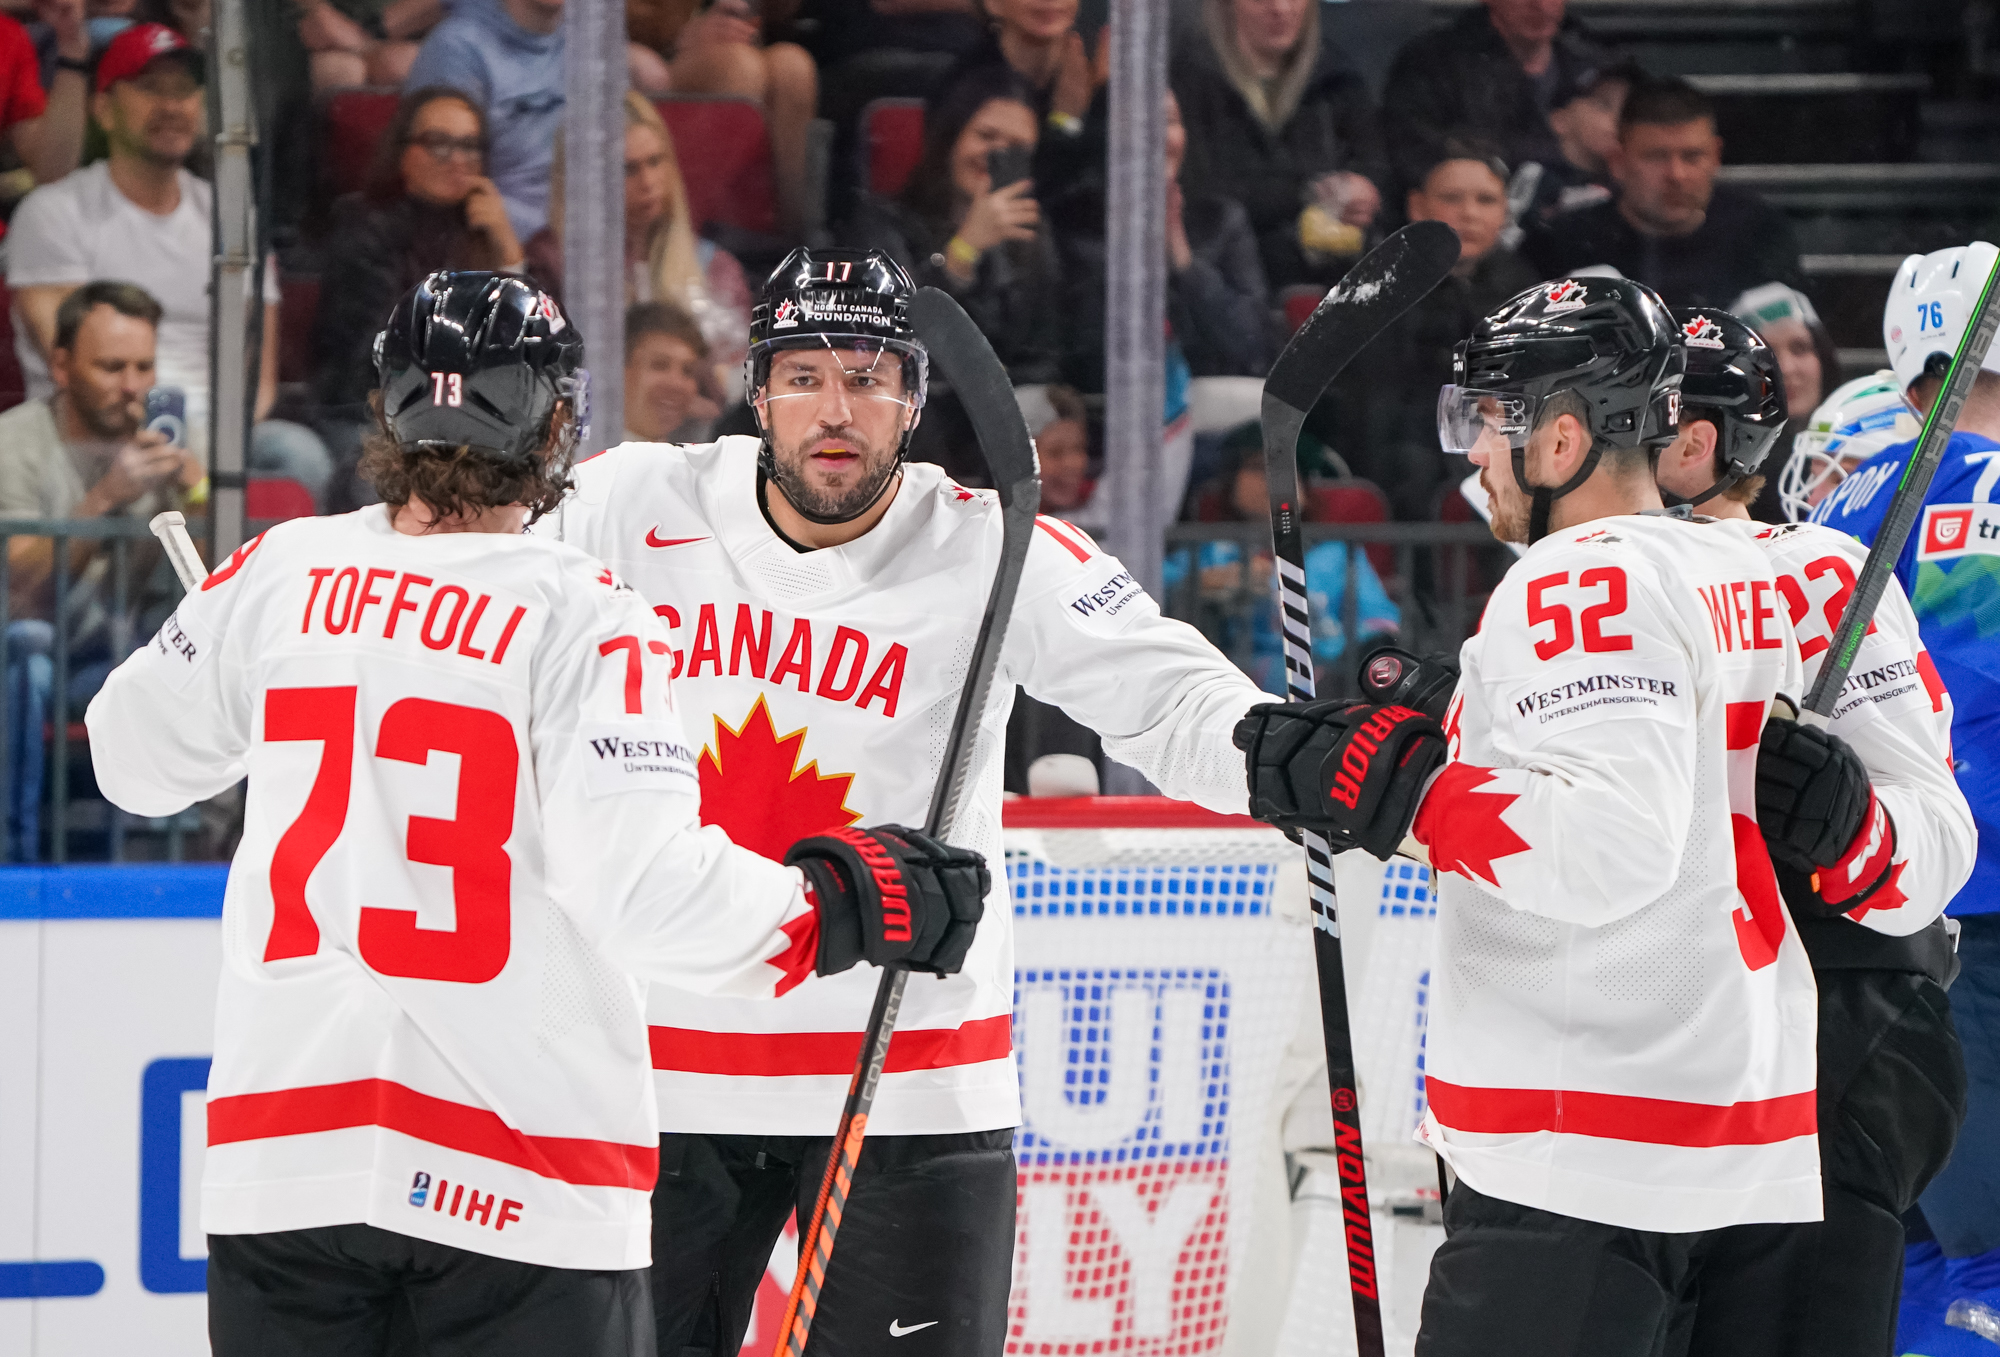 IIHF – Kanada wywiera presję na Słowenię